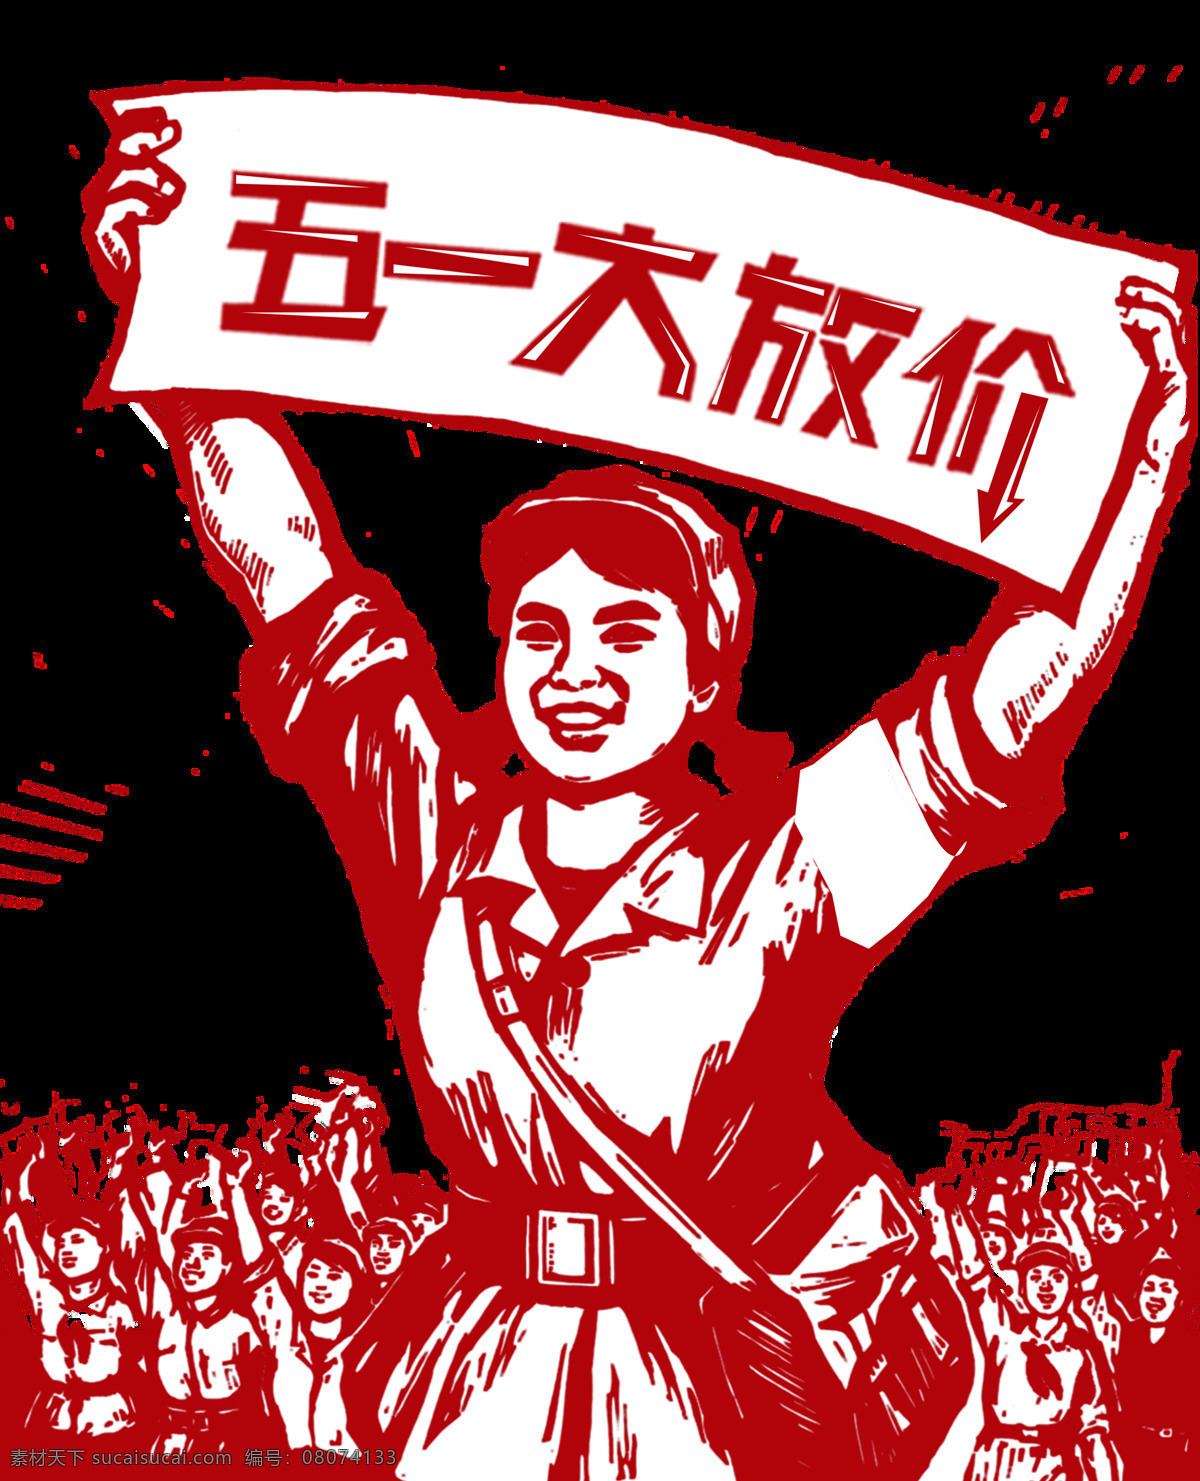 喜庆 工农兵 暗红色 横幅 劳动节 节日 元素 五一节 皮包 工人 节日快乐 节日元素 红色横幅 红色字体